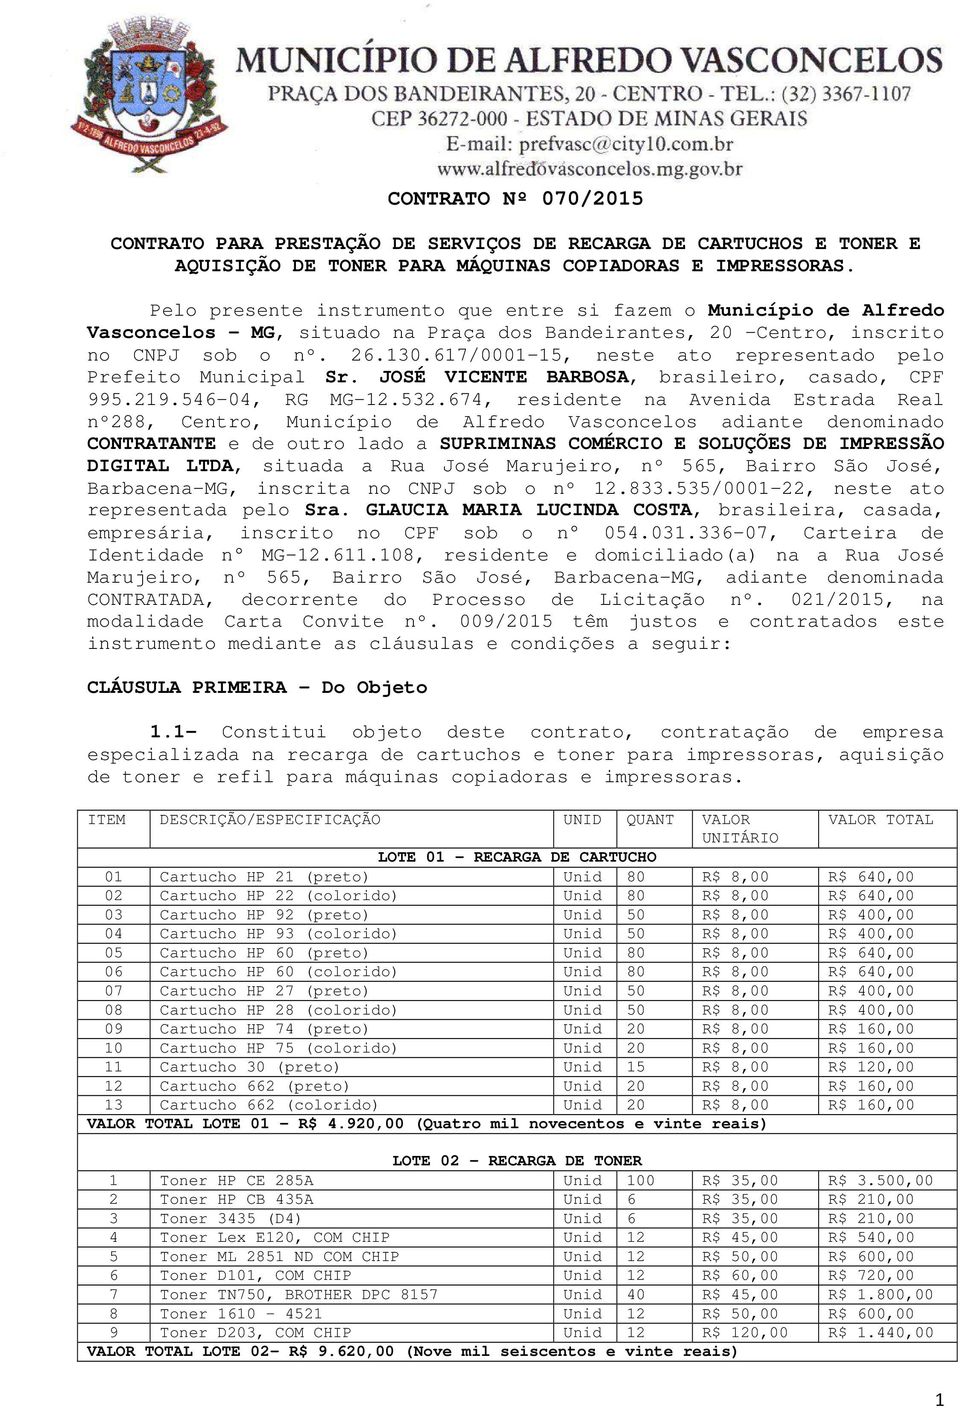 617/0001-15, neste ato representado pelo Prefeito Municipal Sr. JOSÉ VICENTE BARBOSA, brasileiro, casado, CPF 995.219.546-04, RG MG-12.532.